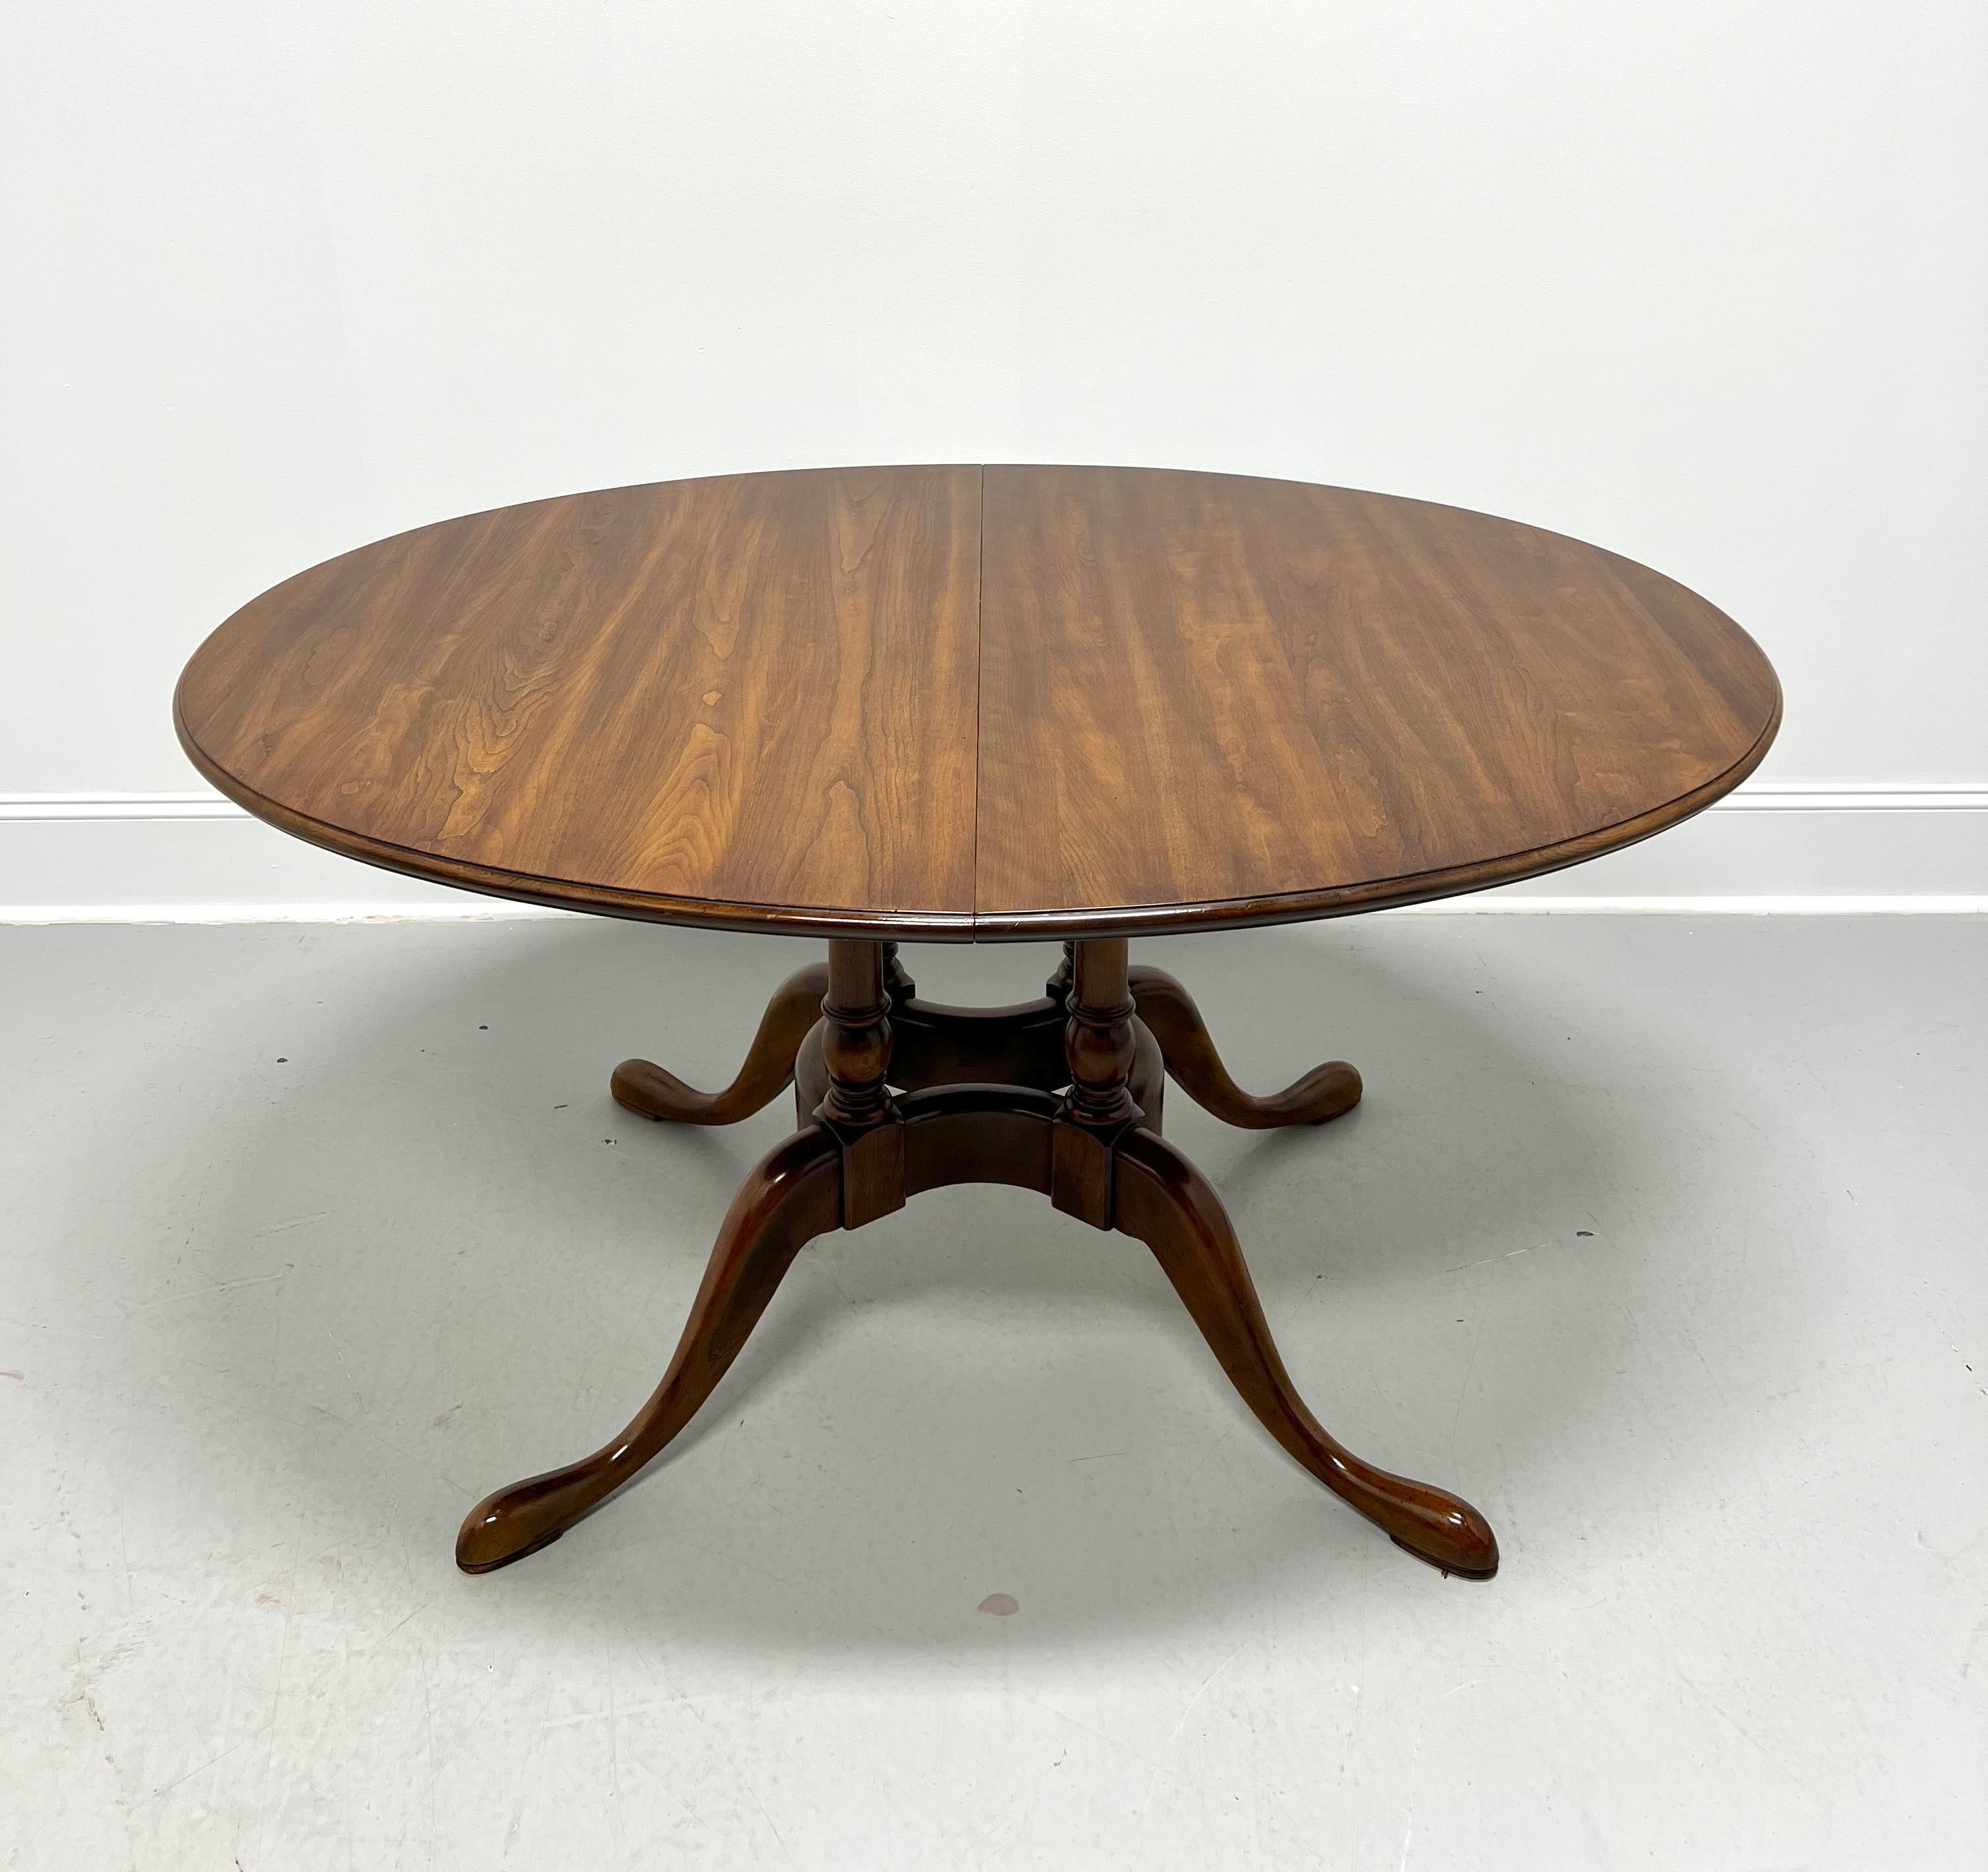 Ein ovaler Esstisch im Queen-Anne-Stil von Statton Furniture. Massives Kirschbaumholz mit Oxford-Finish, abgeschrägte Kante an der Platte, zurückgesetzte Schürze, einzelner Sockel mit Vogelkäfig, geschwungene Beine und pad-Füße. Beinhaltet zwei